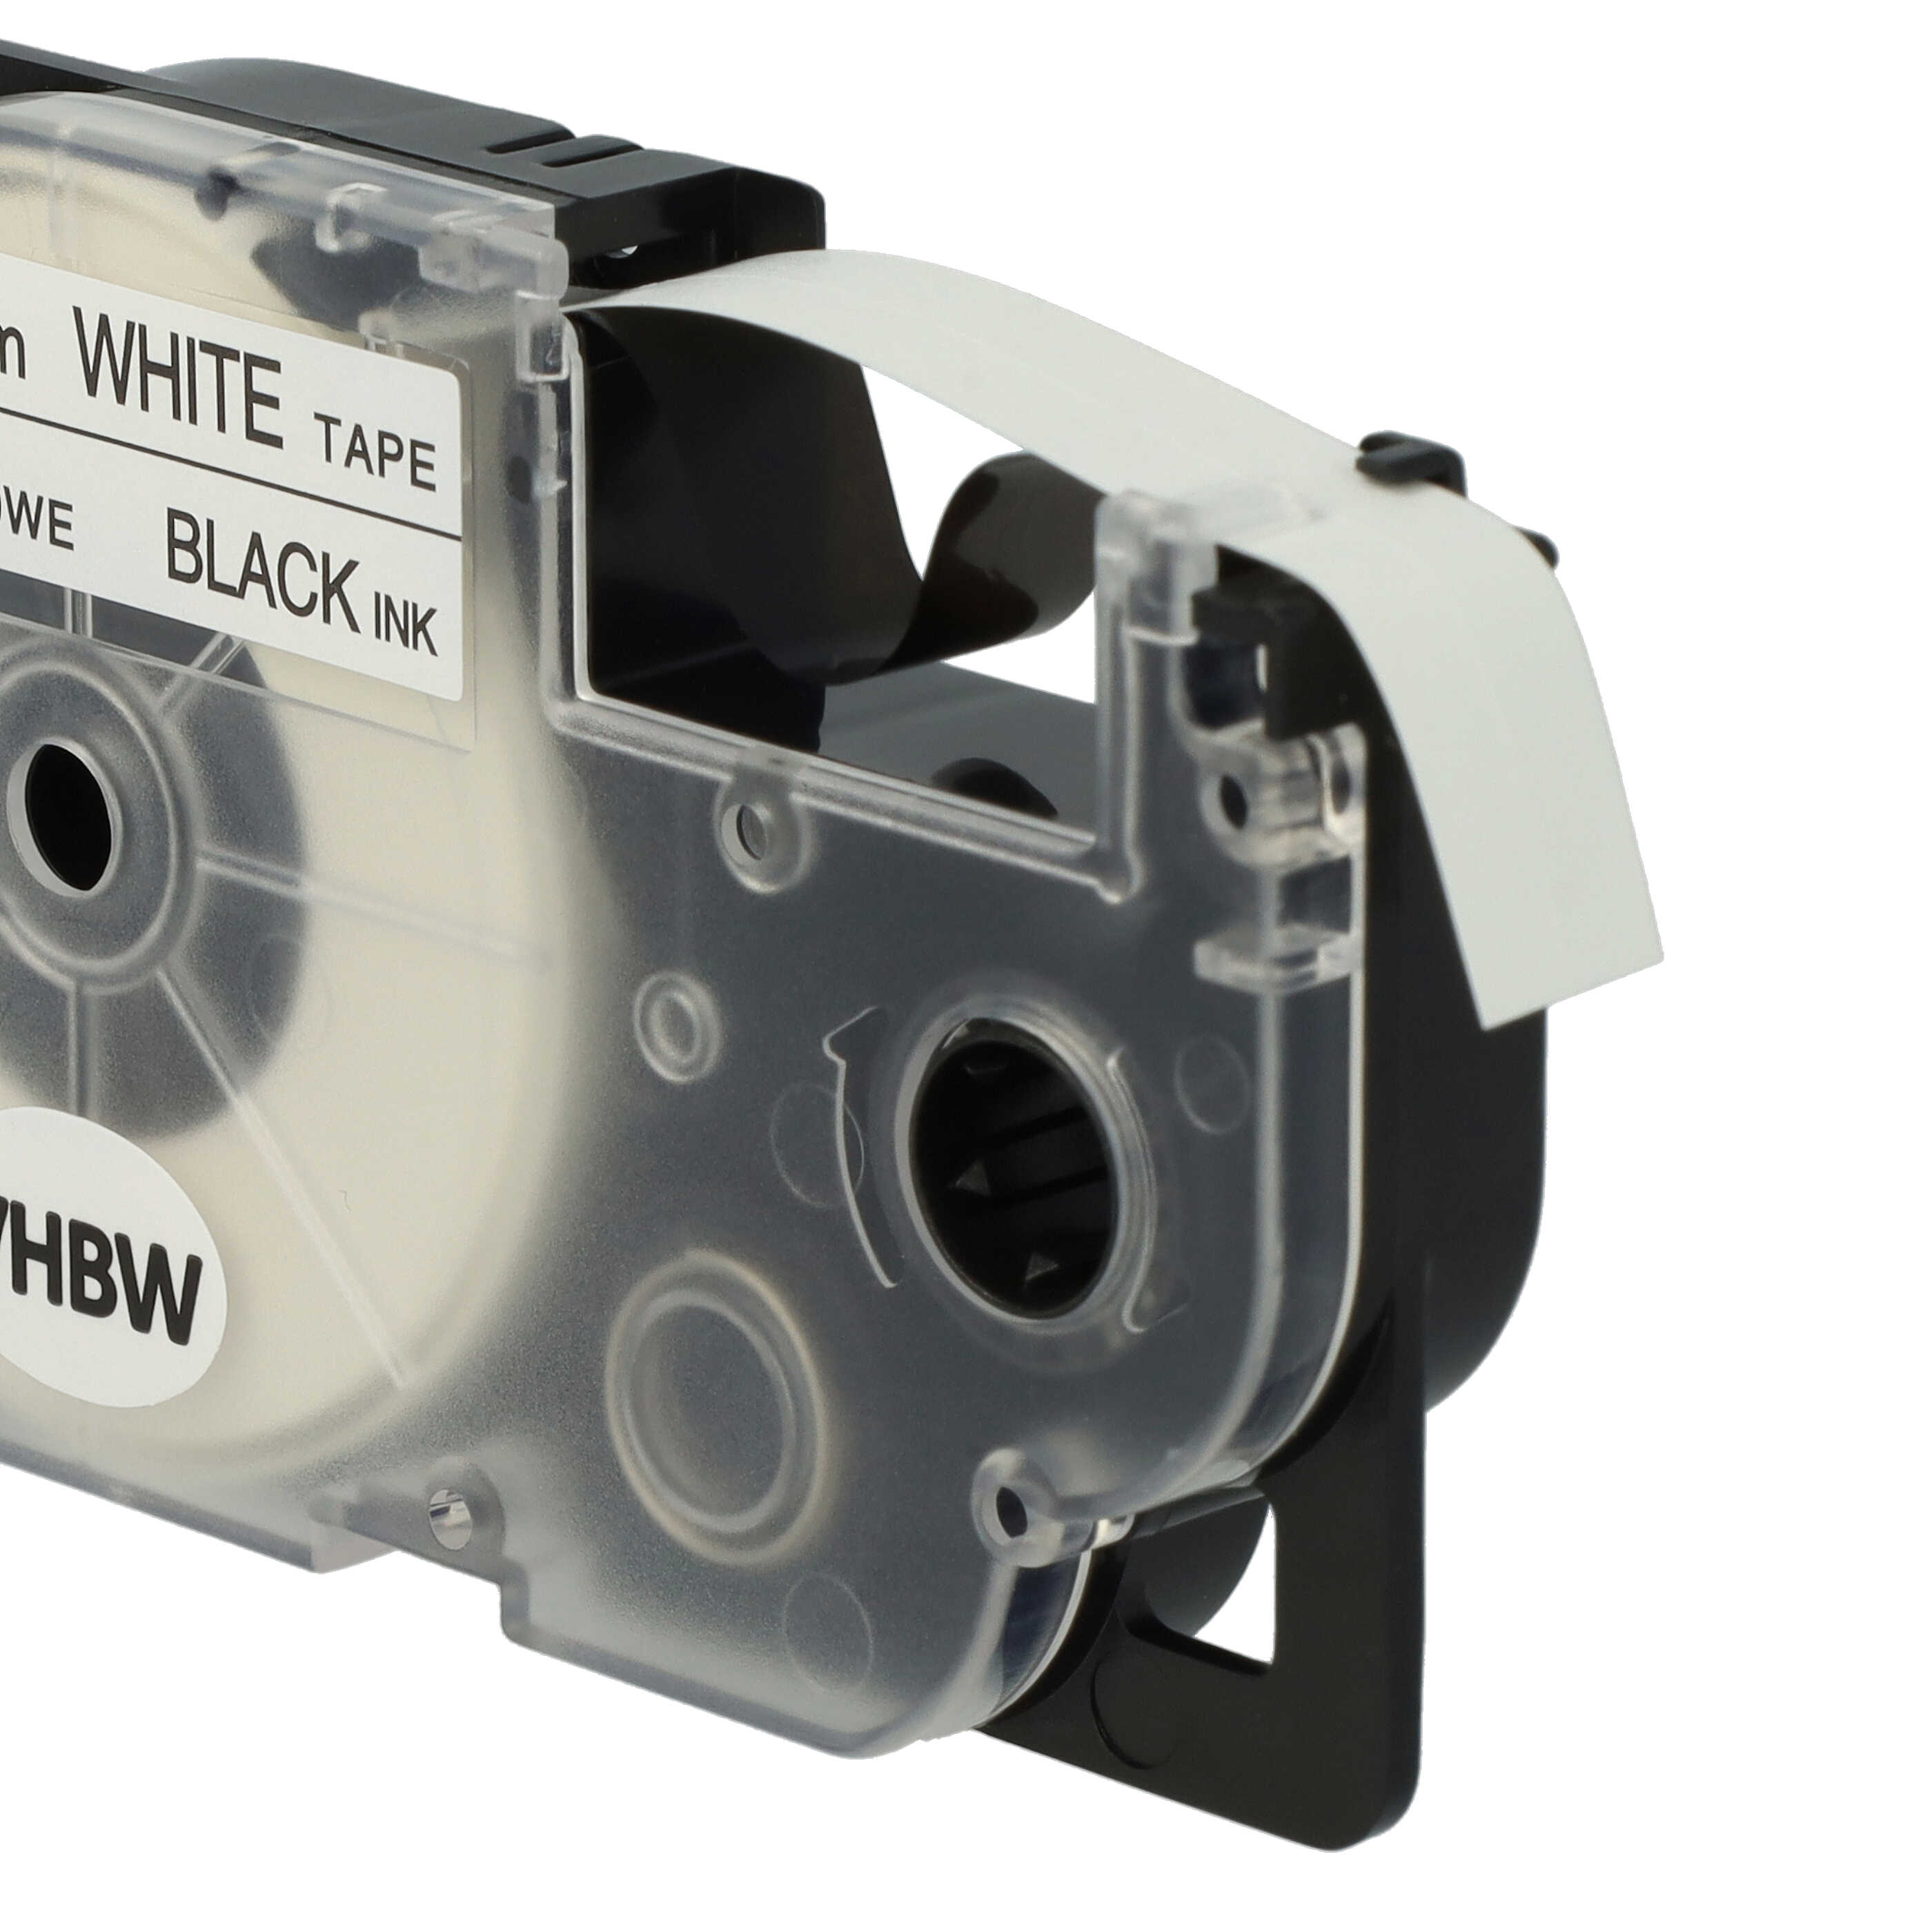 5x Casete cinta escritura reemplaza Casio XR-9WE1 Negro su Blanco